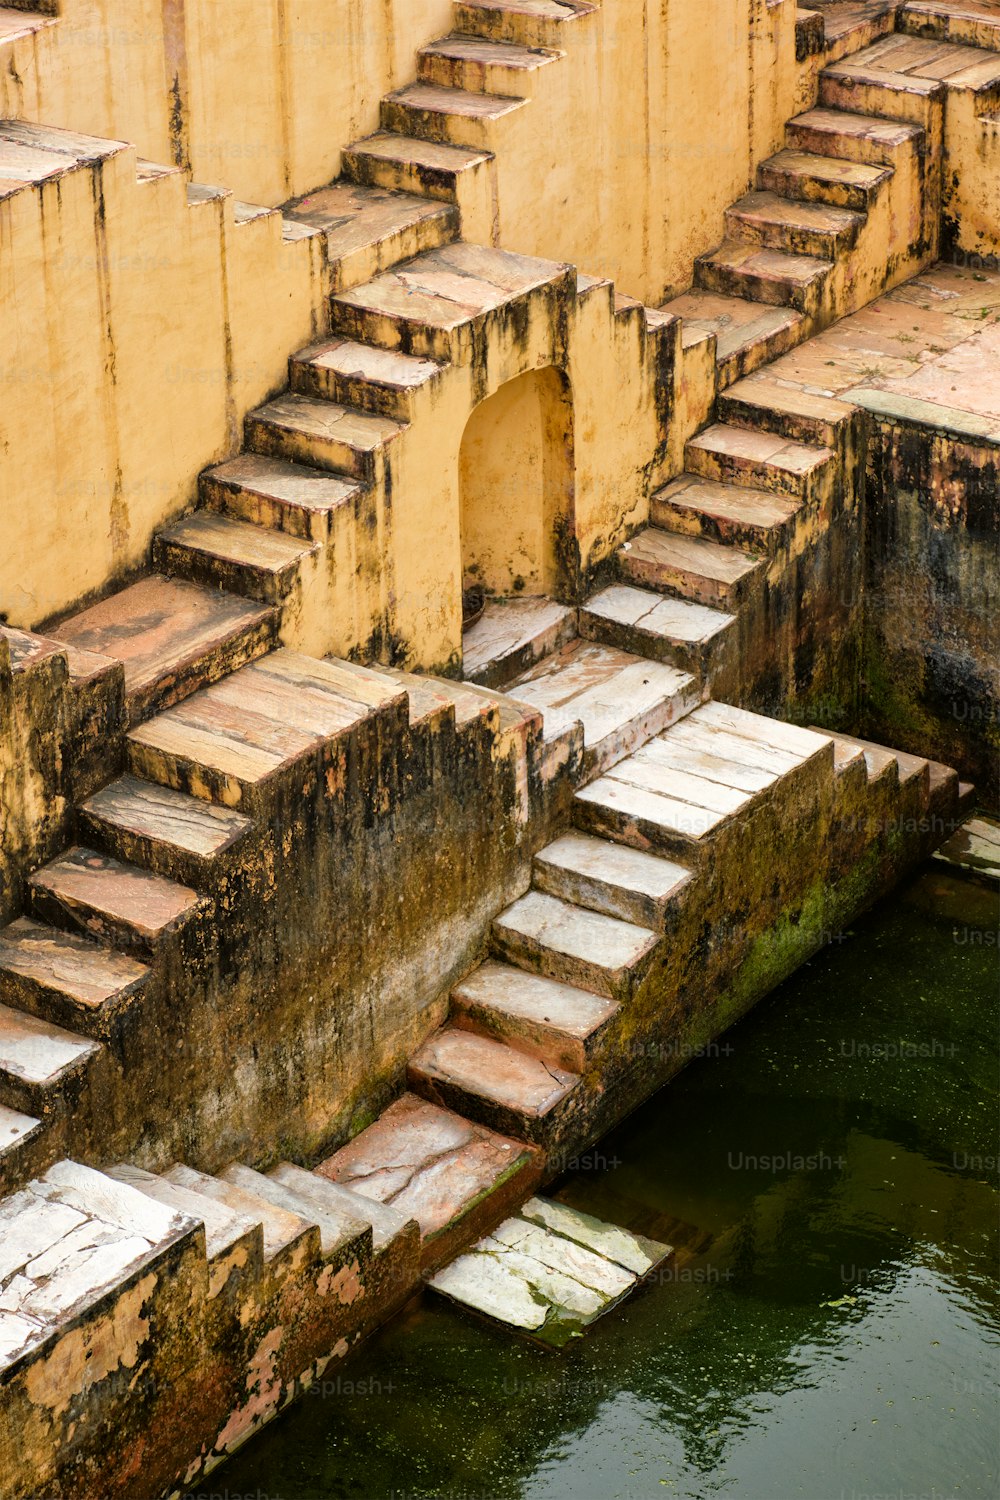 インド、ラージャスターン州ジャイプール、アンバーのパンナミーナカクンド階段井戸